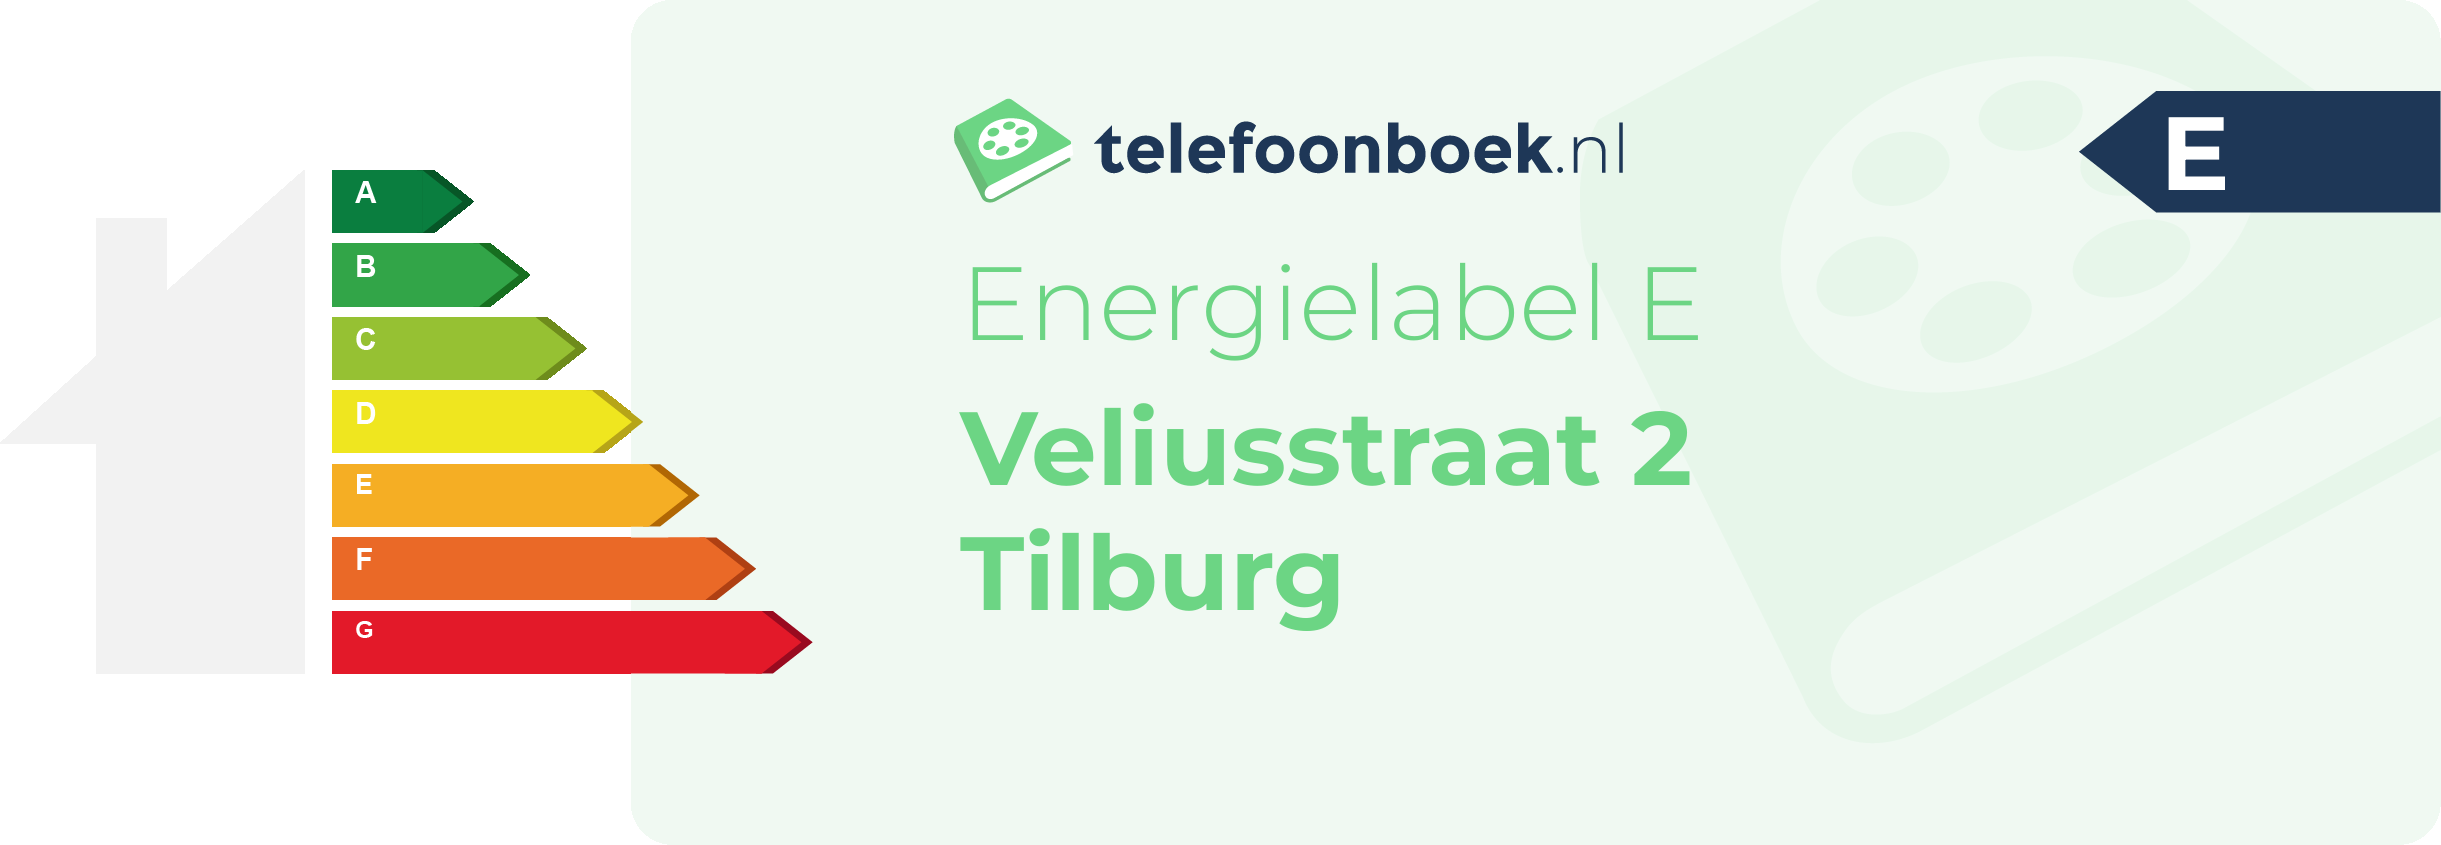 Energielabel Veliusstraat 2 Tilburg